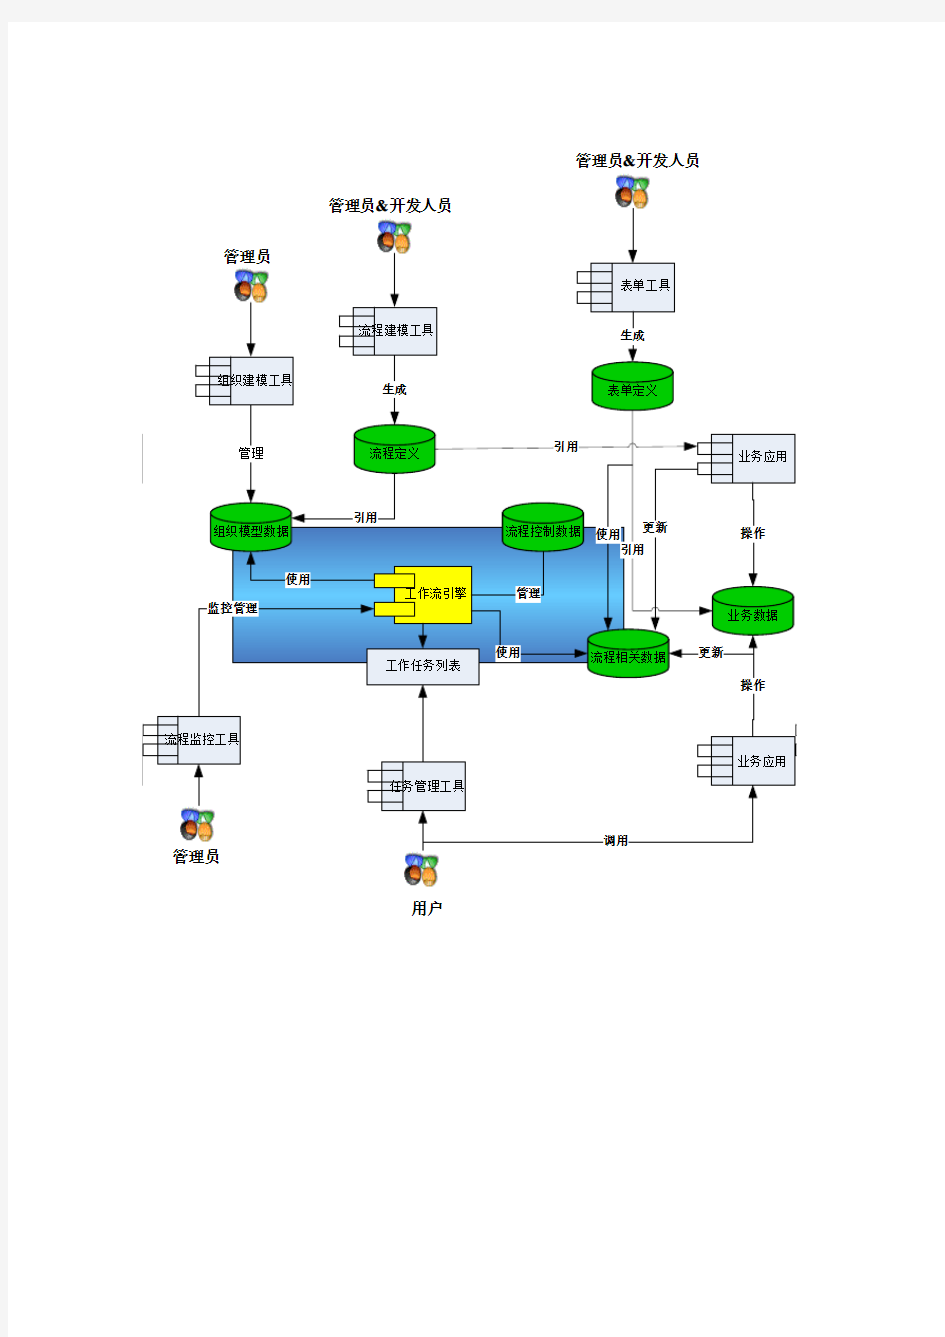 工作流管理系统结构图